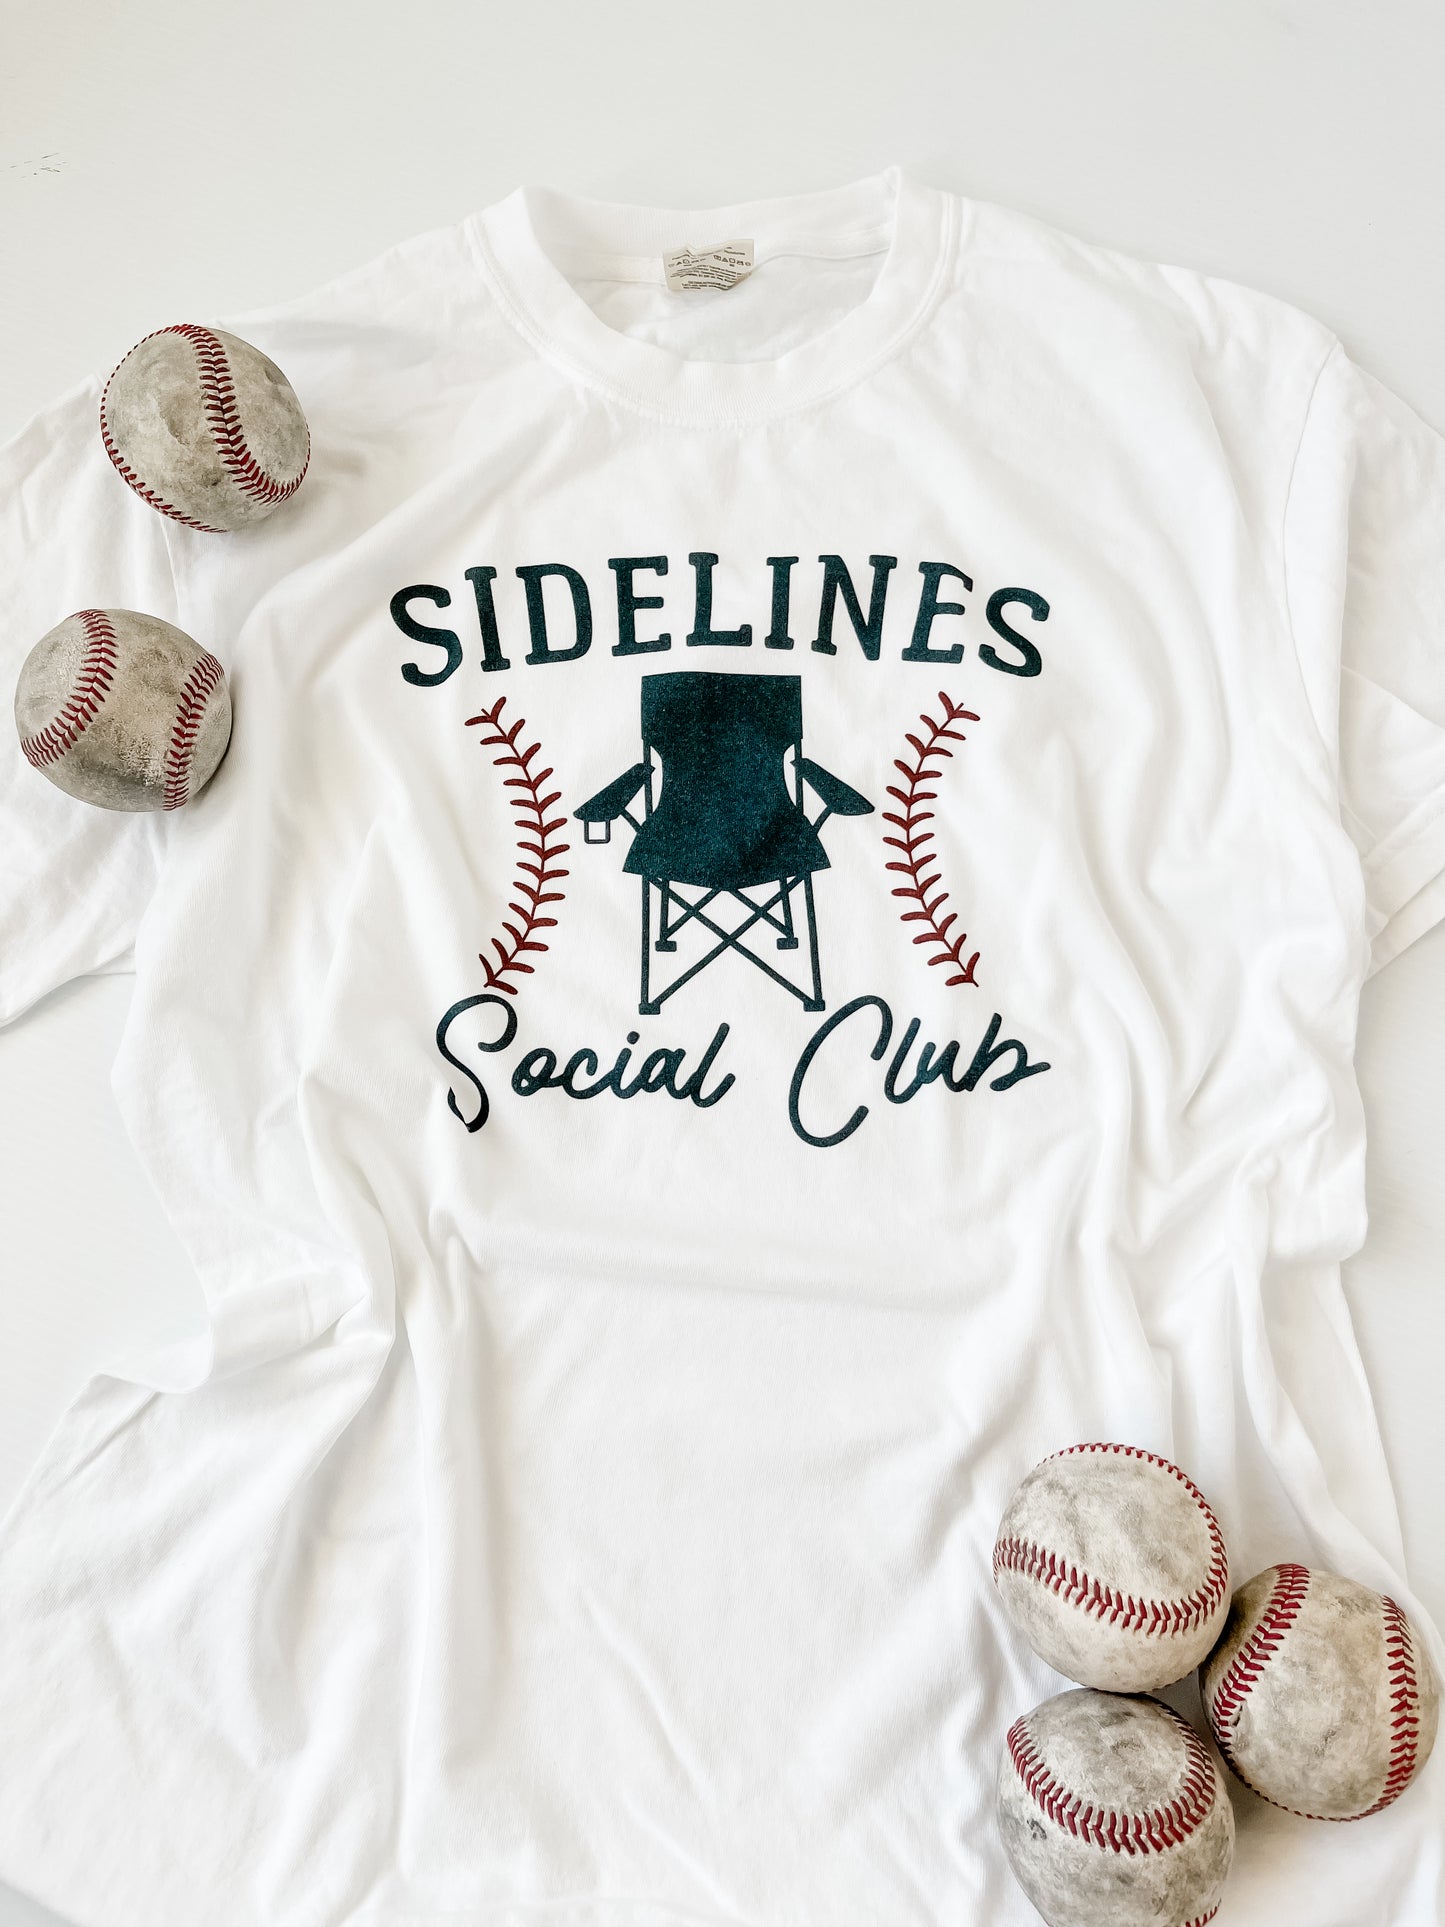 Sidelines Social Club Tee